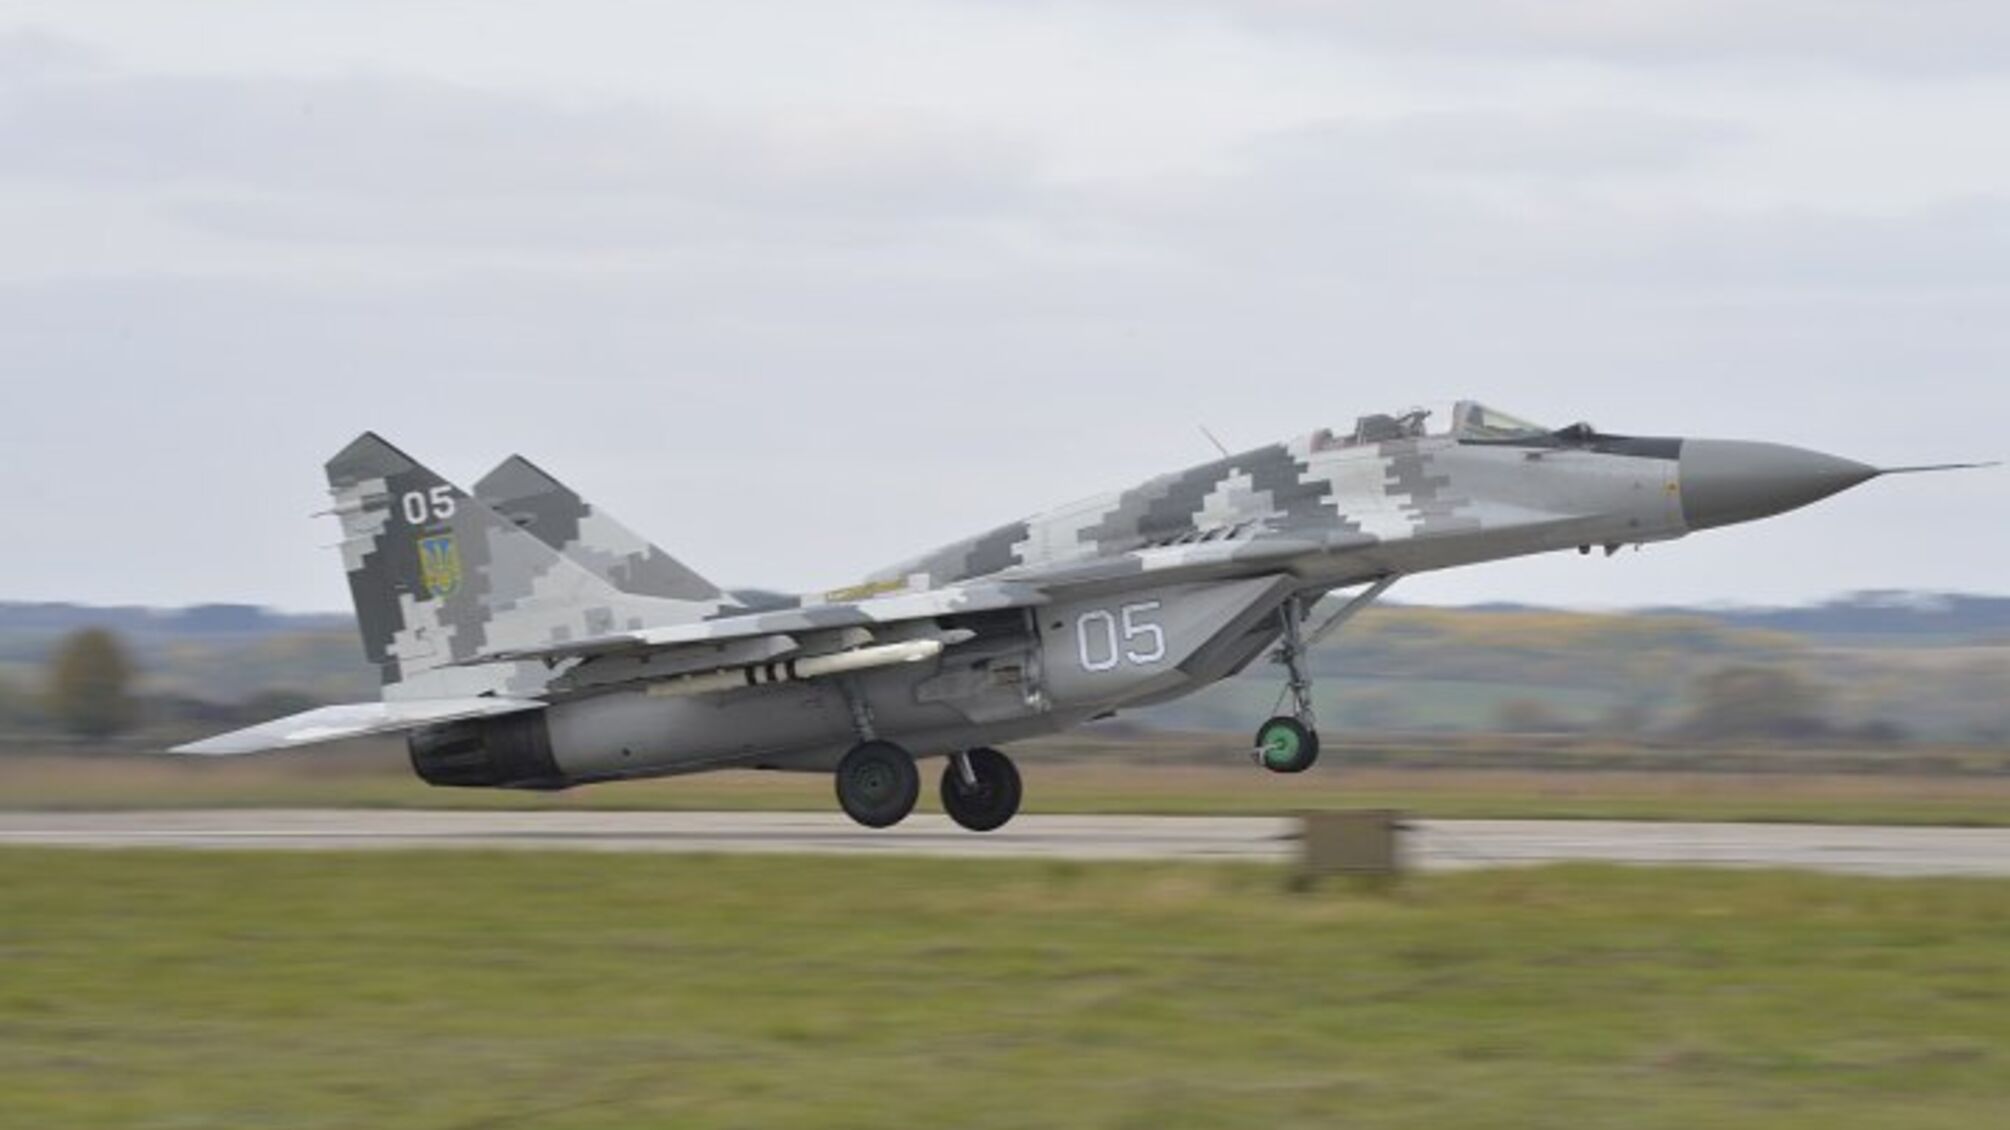 Словакия планирует передать Украине МиГ-29: приготовления могут начать в ближайшее время